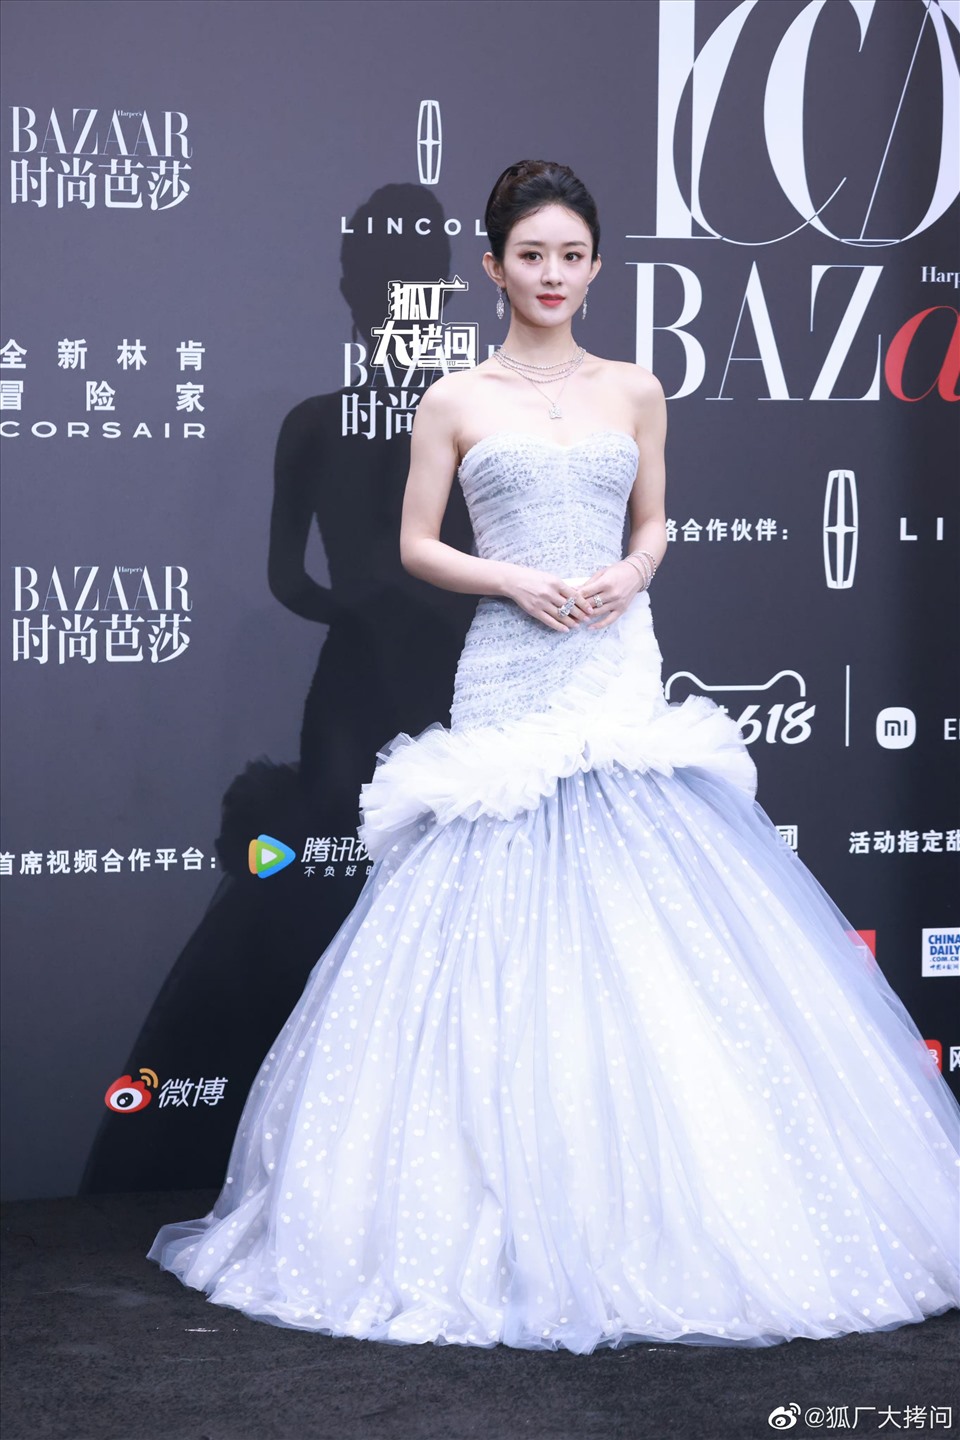 5 mẫu đầm dự tiệc đẹp của Triệu Lệ Dĩnh khiến fans chết mê  BlogAnChoi